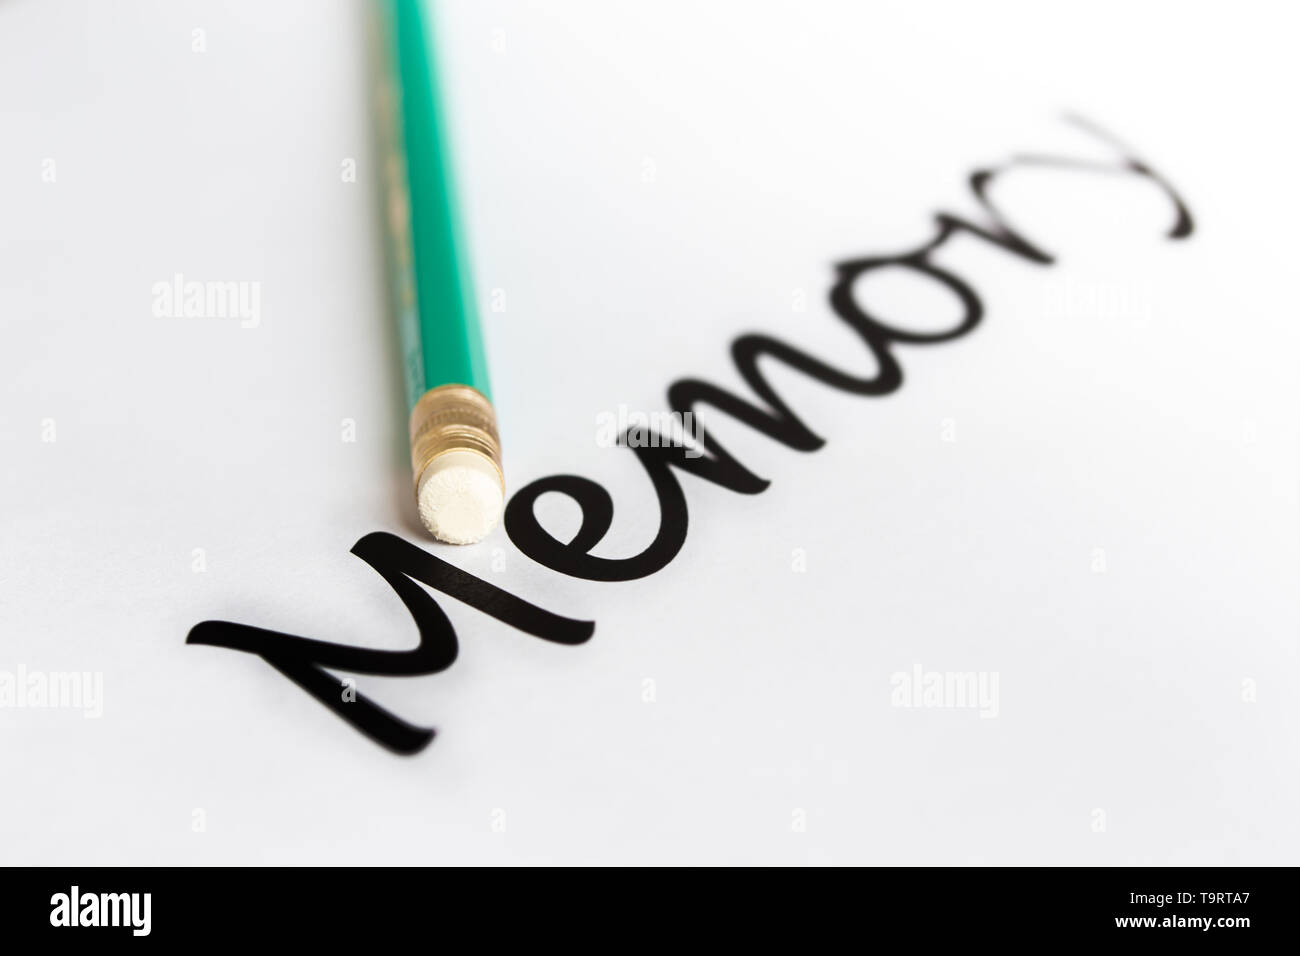 Un lápiz con una goma de borrar y la palabra 'memory' con un final borroso. El concepto de problemas de memoria, olvido. Foto de stock